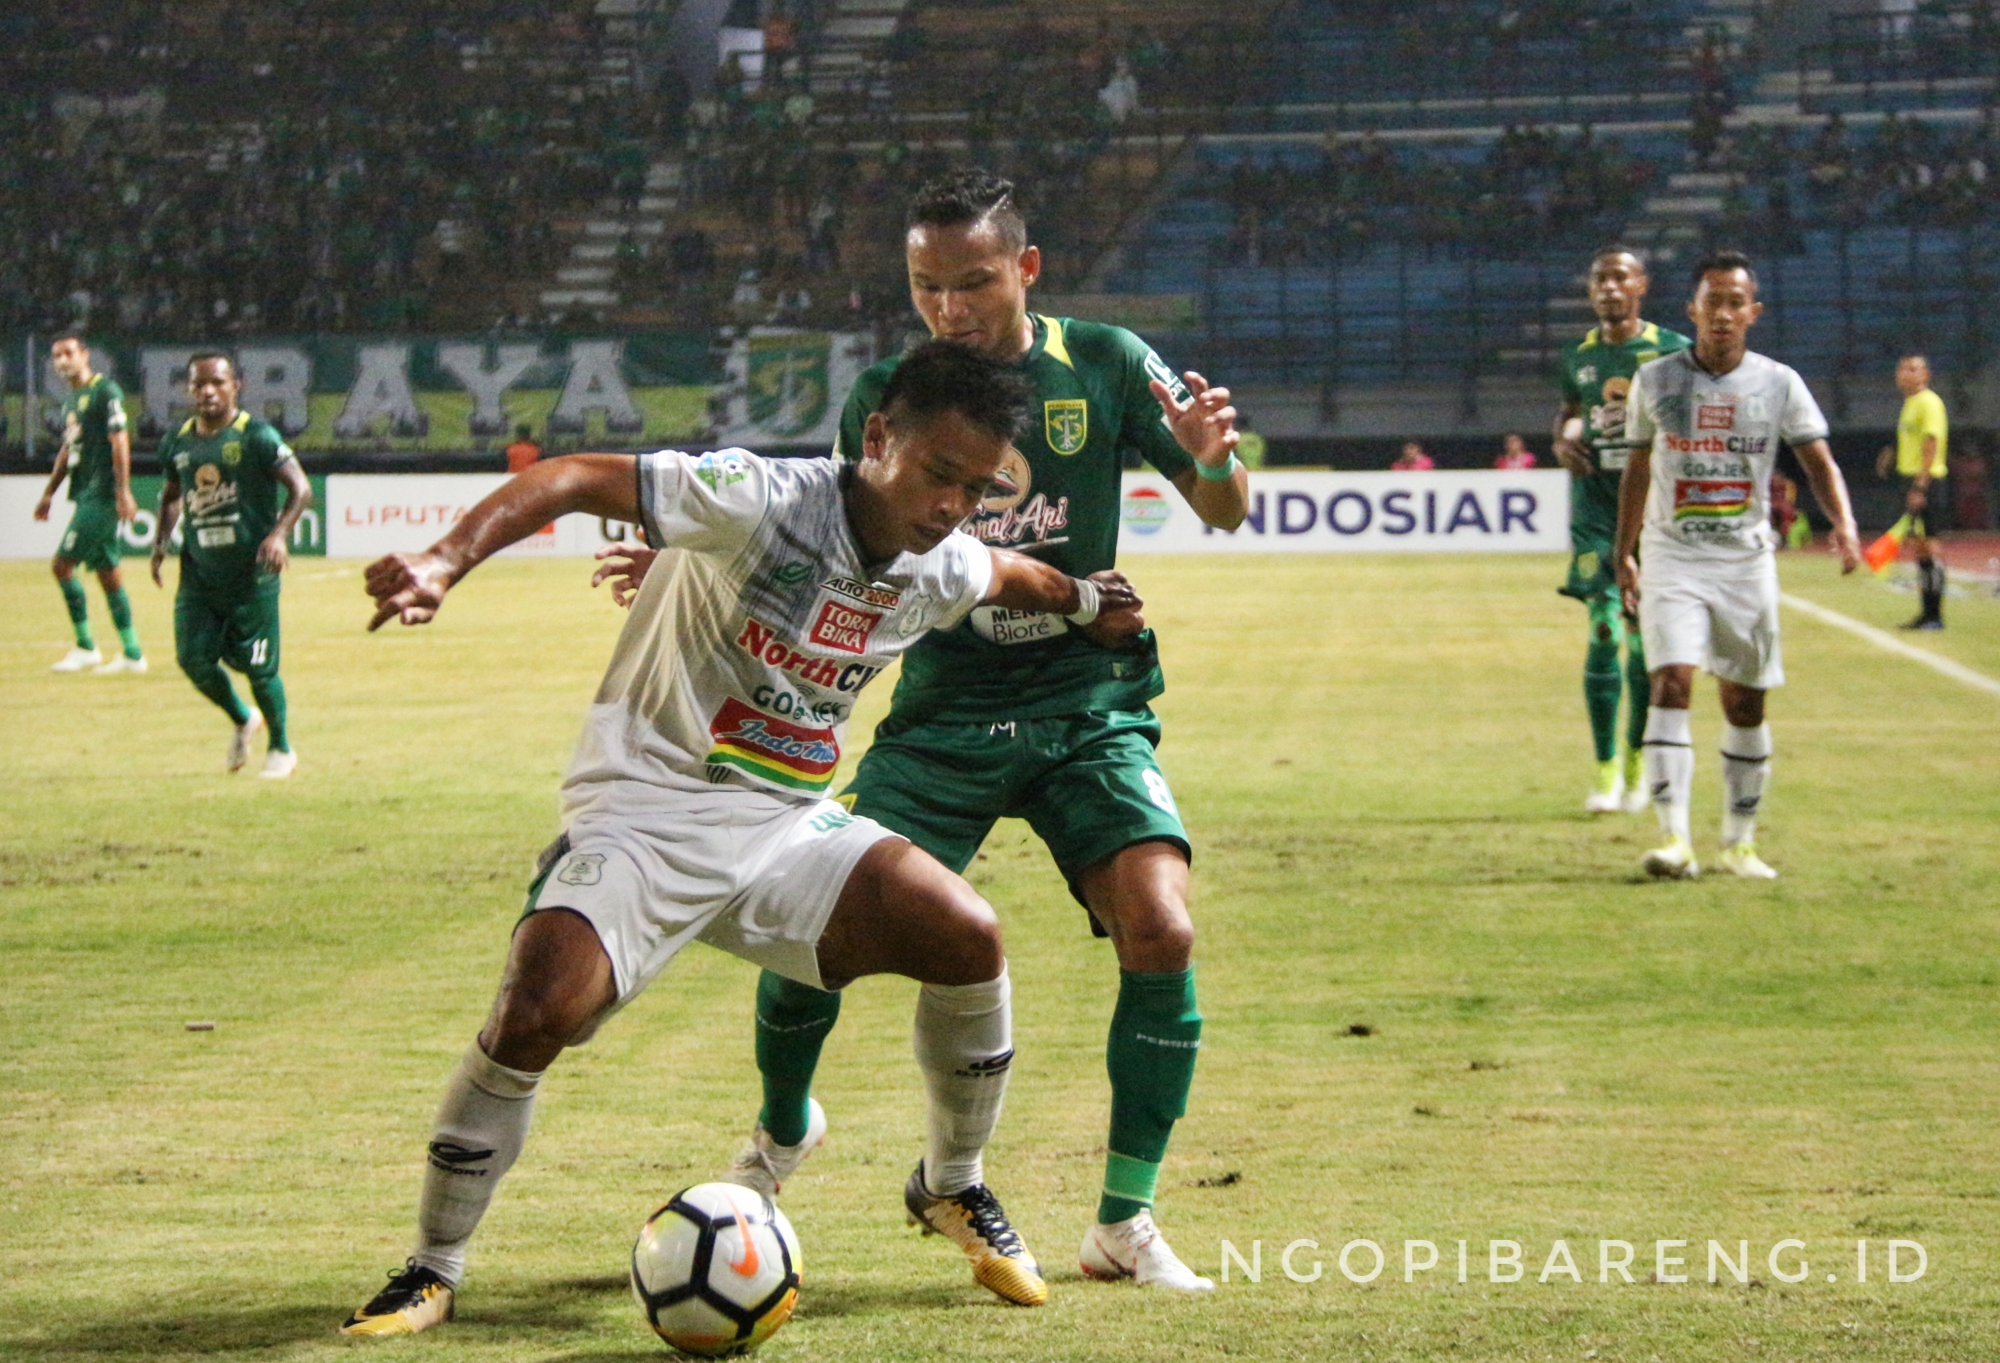 Pertandingan PSMS Medan (putih) menghadapi Persebaya (hijau) di Stadion Gelora Bung Tomo, Rabu 18 Juli 2018. (foto: Haris/ngopibareng)